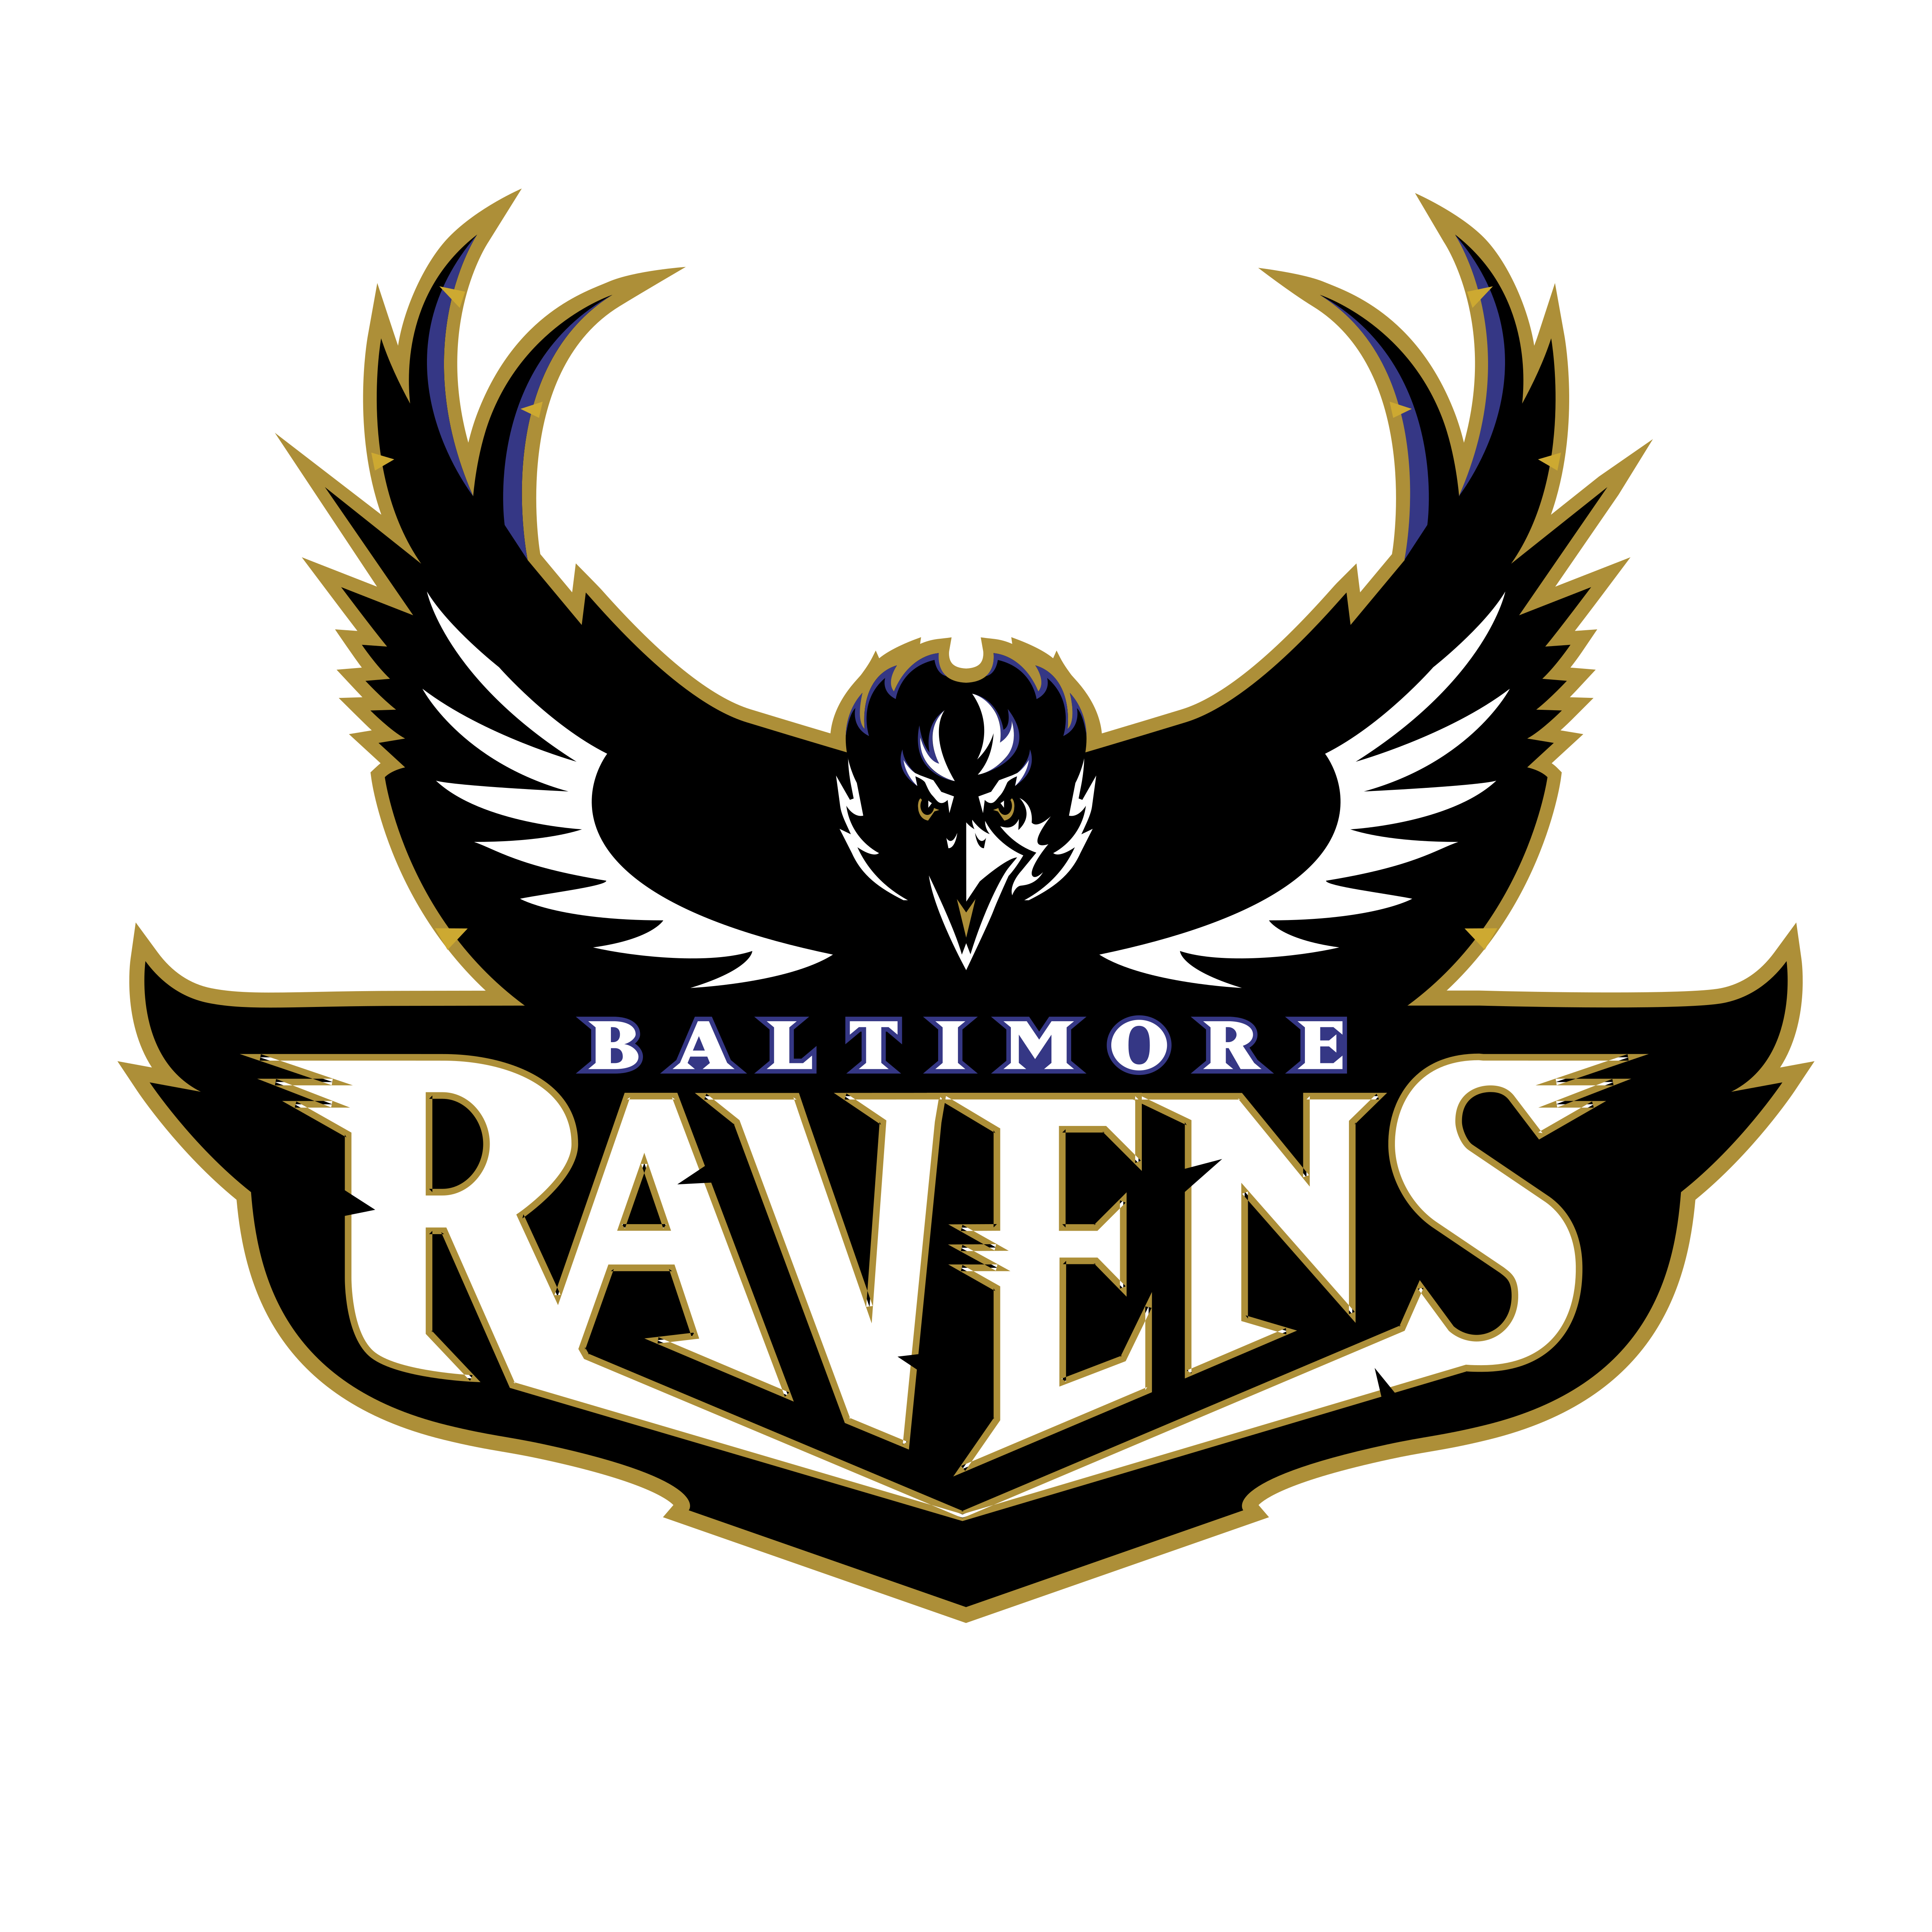 Baltimore Ravens Logo - Baltimore Ravens – Logos Download